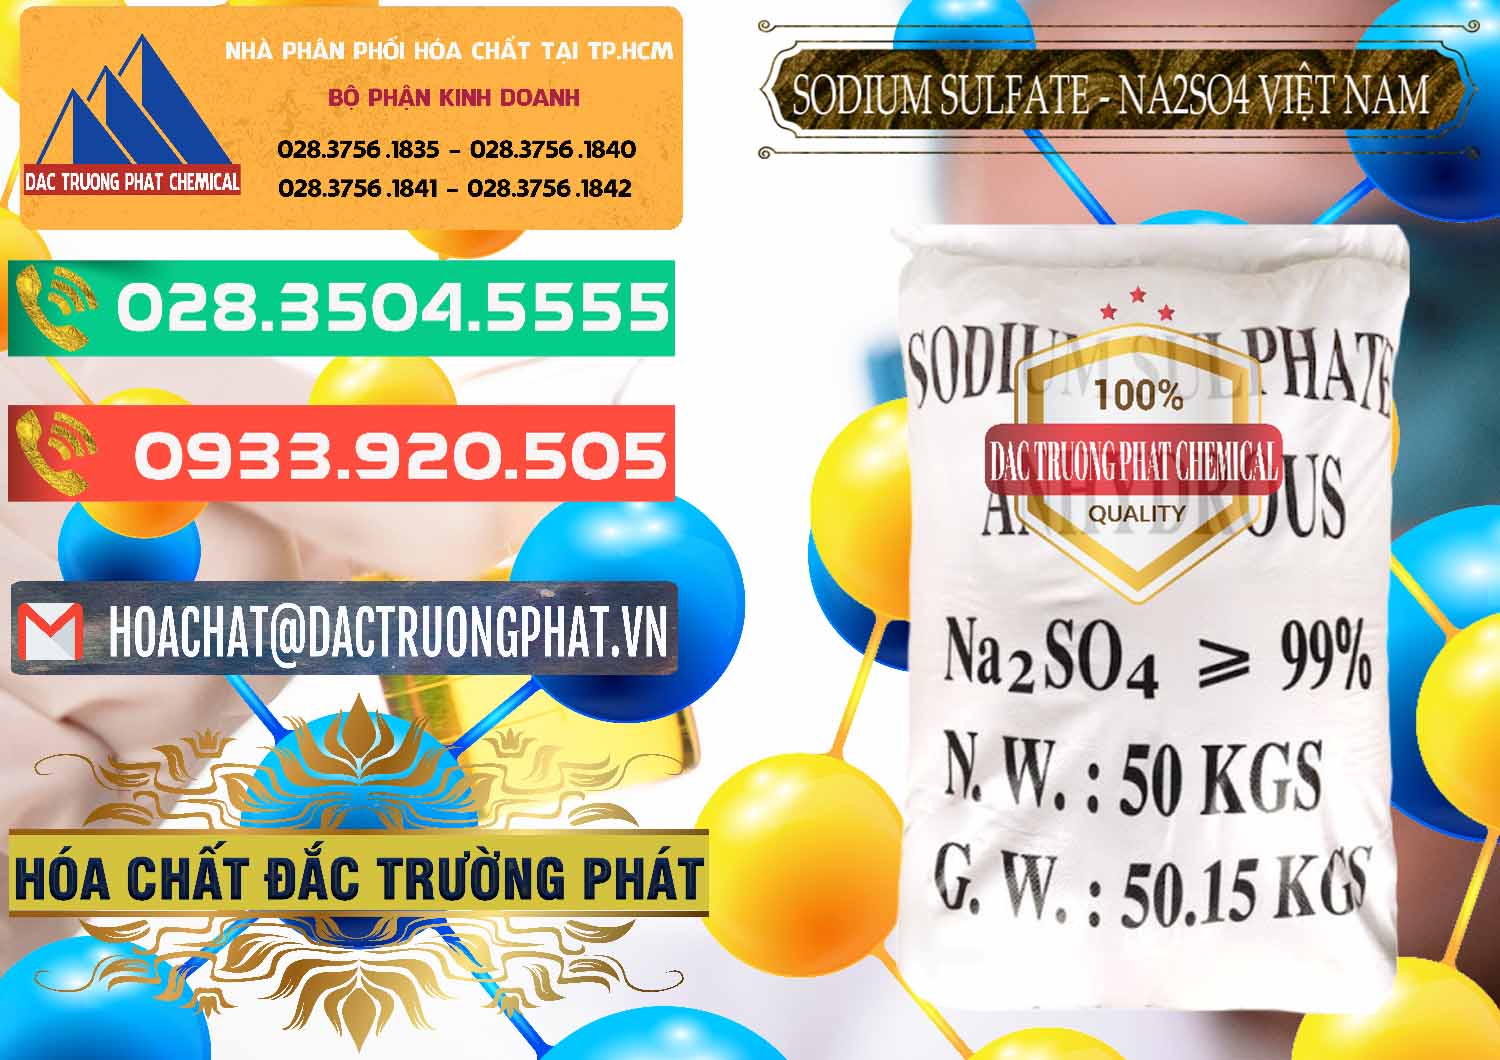 Nhà cung ứng & bán Sodium Sulphate - Muối Sunfat Na2SO4 Việt Nam - 0355 - Công ty phân phối ( cung ứng ) hóa chất tại TP.HCM - congtyhoachat.com.vn